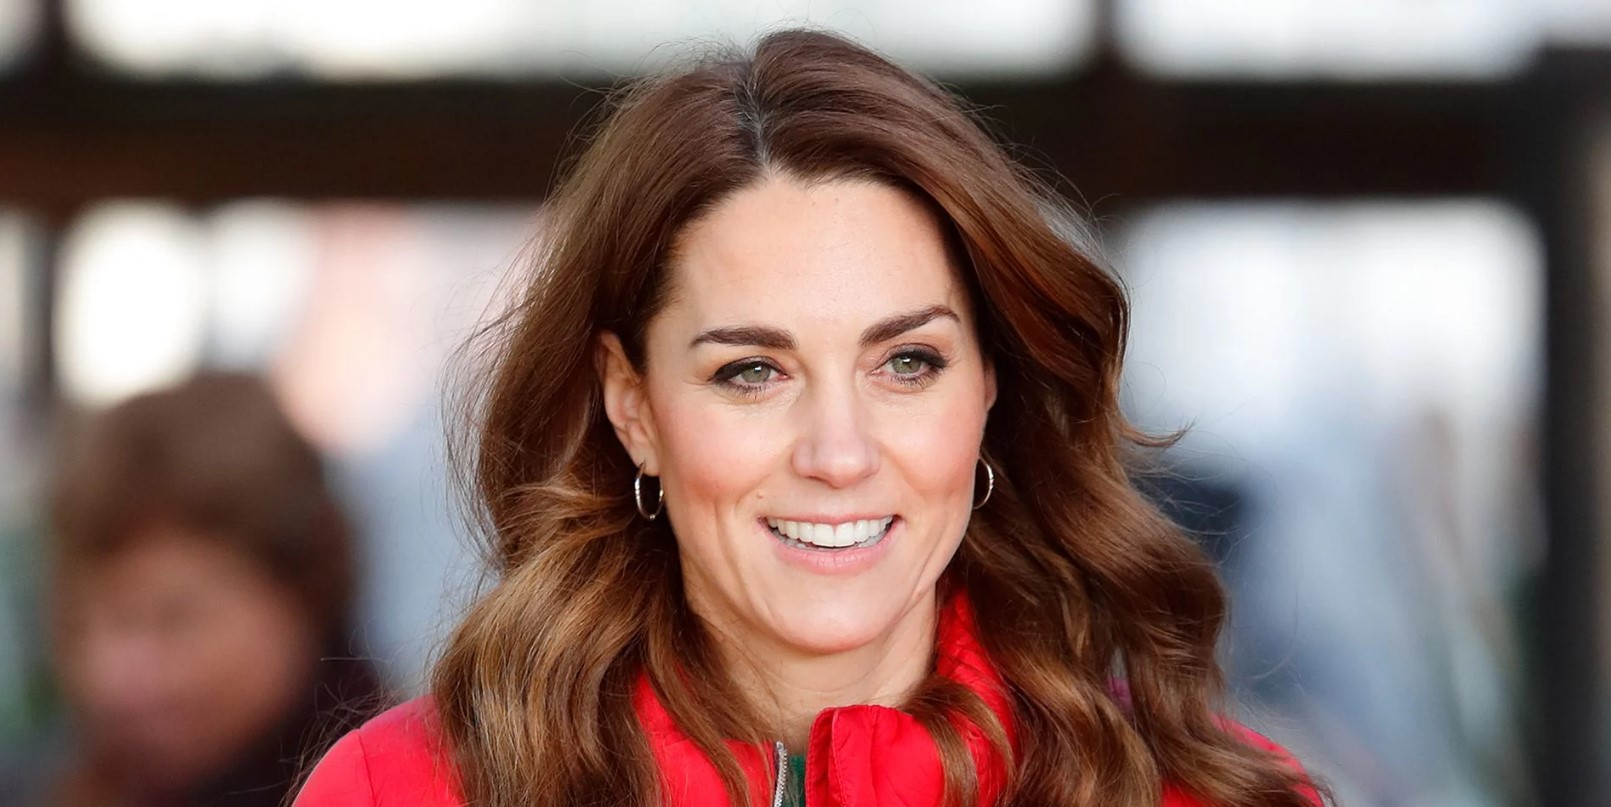 Pse Kate Middleton donte të jepte lajmin për kancerin e vetme pa princin William pranë saj?